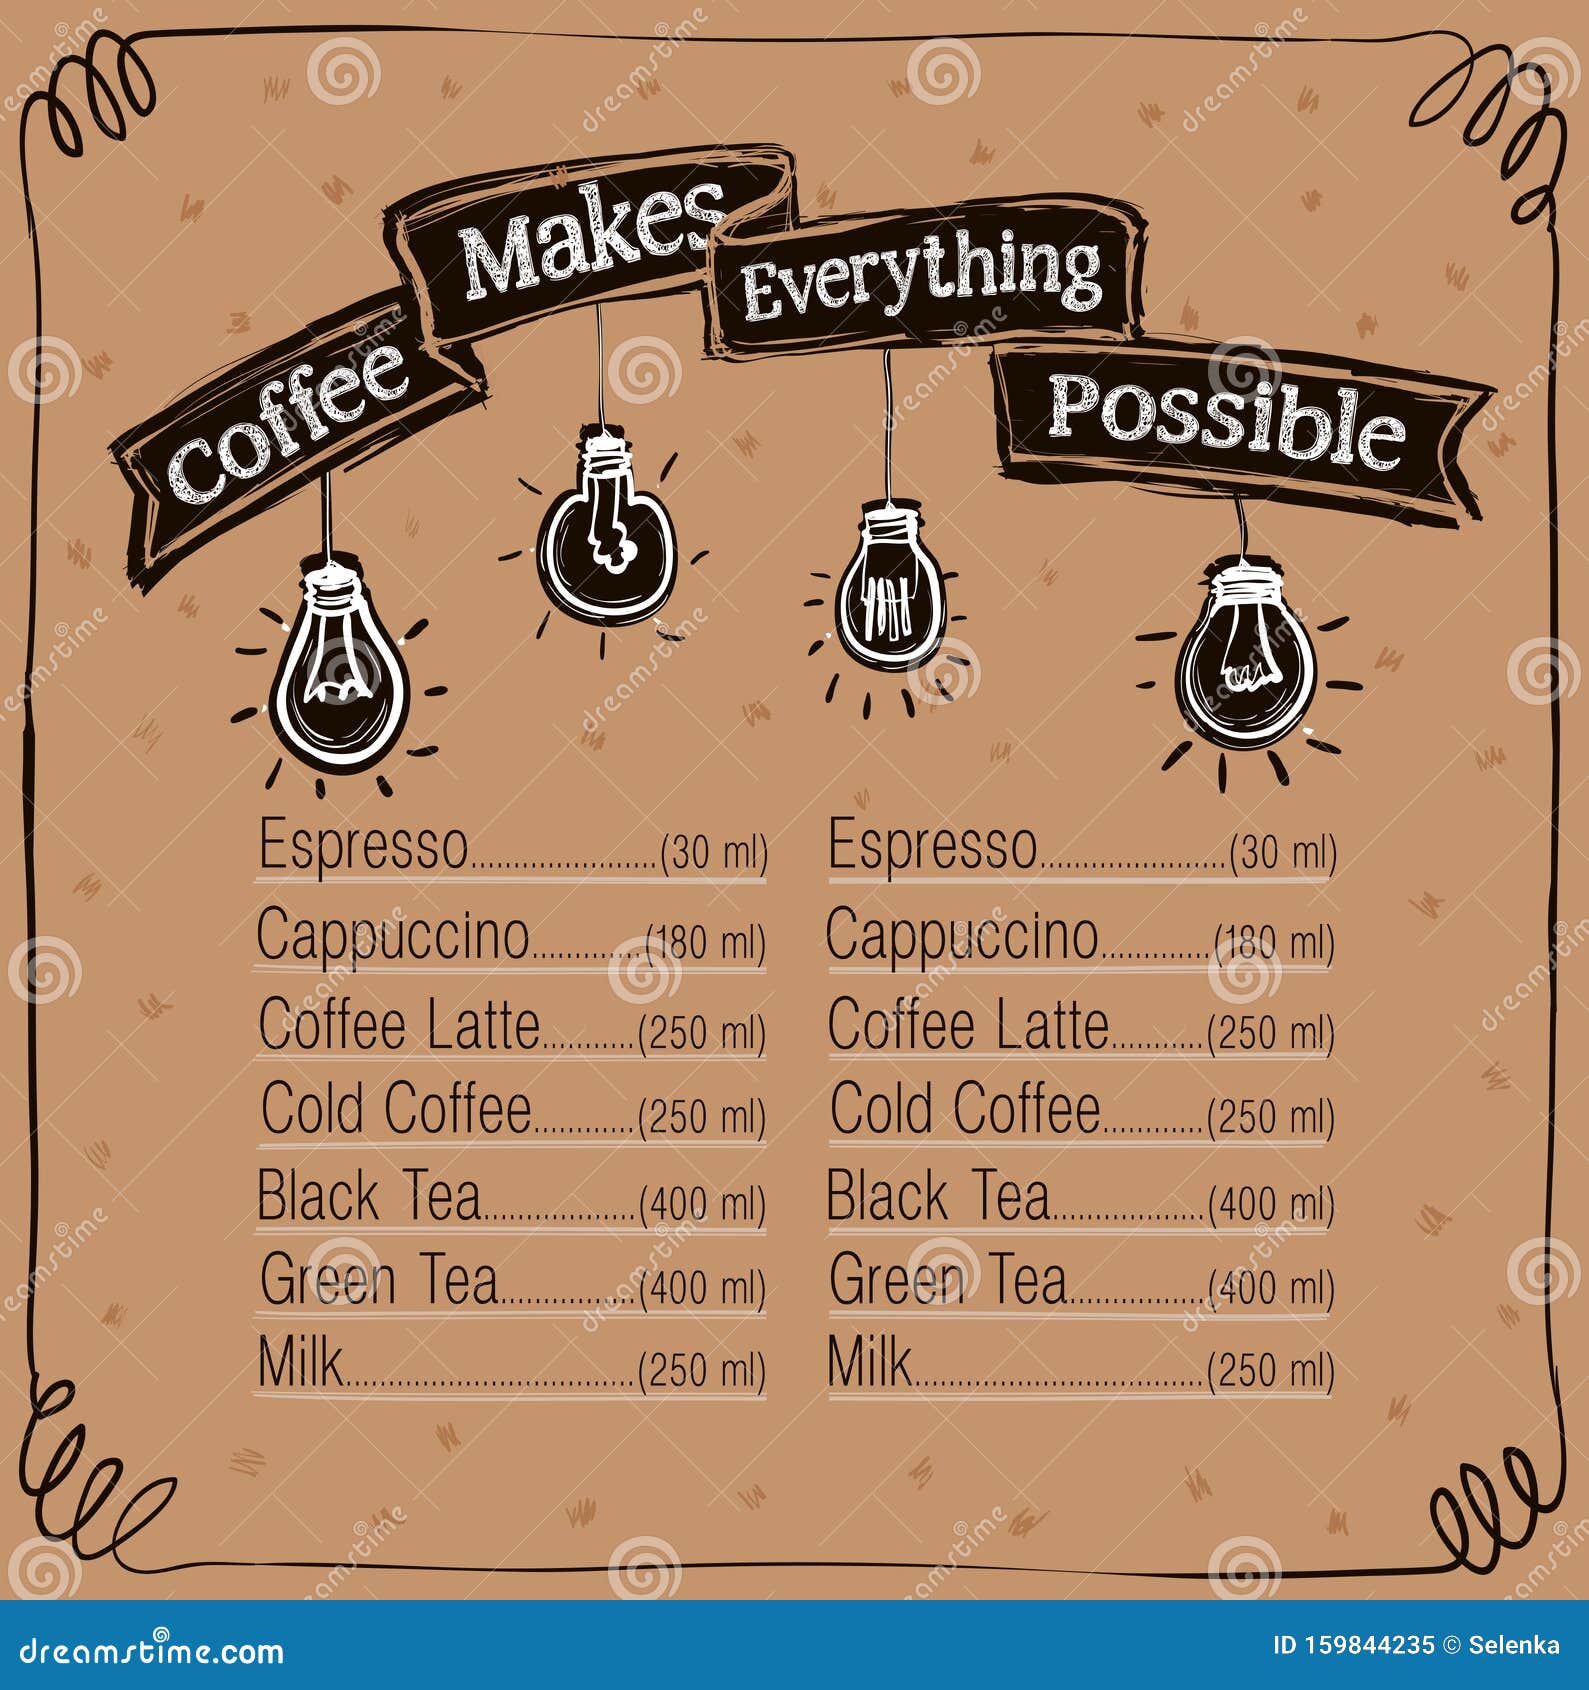 Bảng Menu Cà phê | Bảng Menu Cà phê của bạn đang cần một cái gì đó mới mẻ và hấp dẫn để giữ chân khách hàng? Với bảng menu cà phê độc đáo và tươi trẻ của chúng tôi, bạn có thể thu hút sự chú ý của khách hàng của mình một cách dễ dàng. Nhấn vào hình ảnh để khám phá thêm.